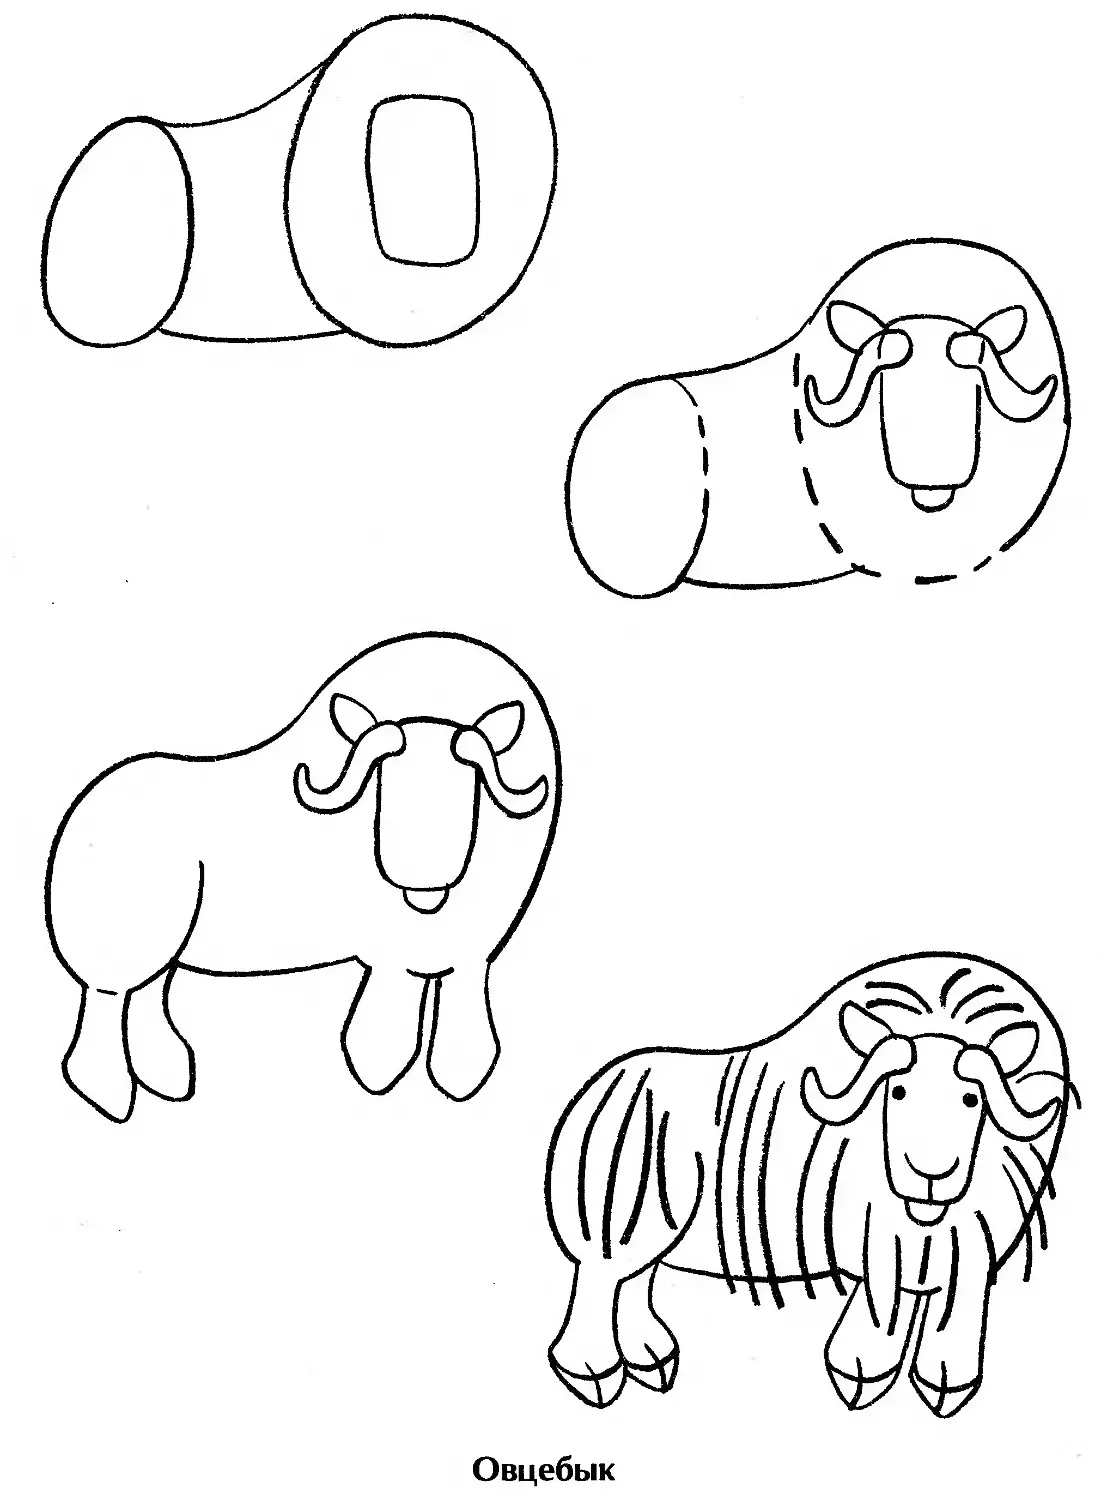 Овцебык рисунок карандашом для детей